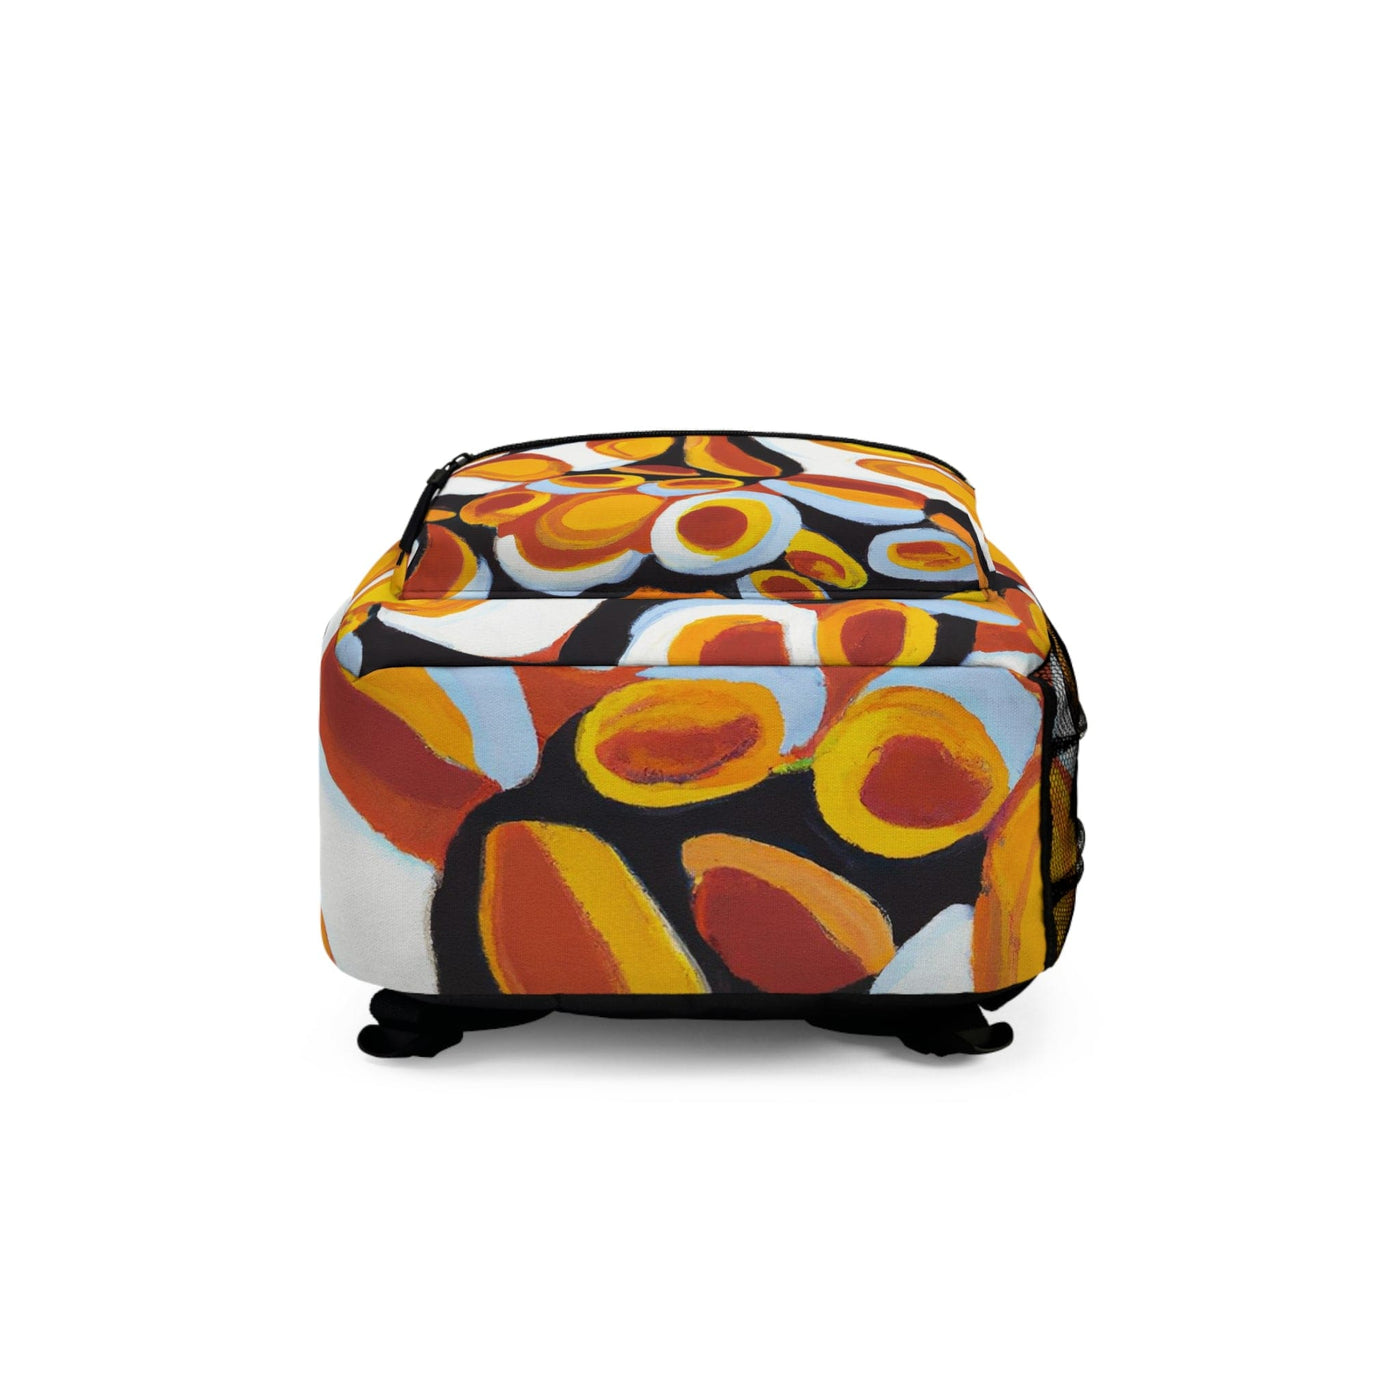 Backpack Work/school/leisure - Waterproof Orange Black White Geometric Print